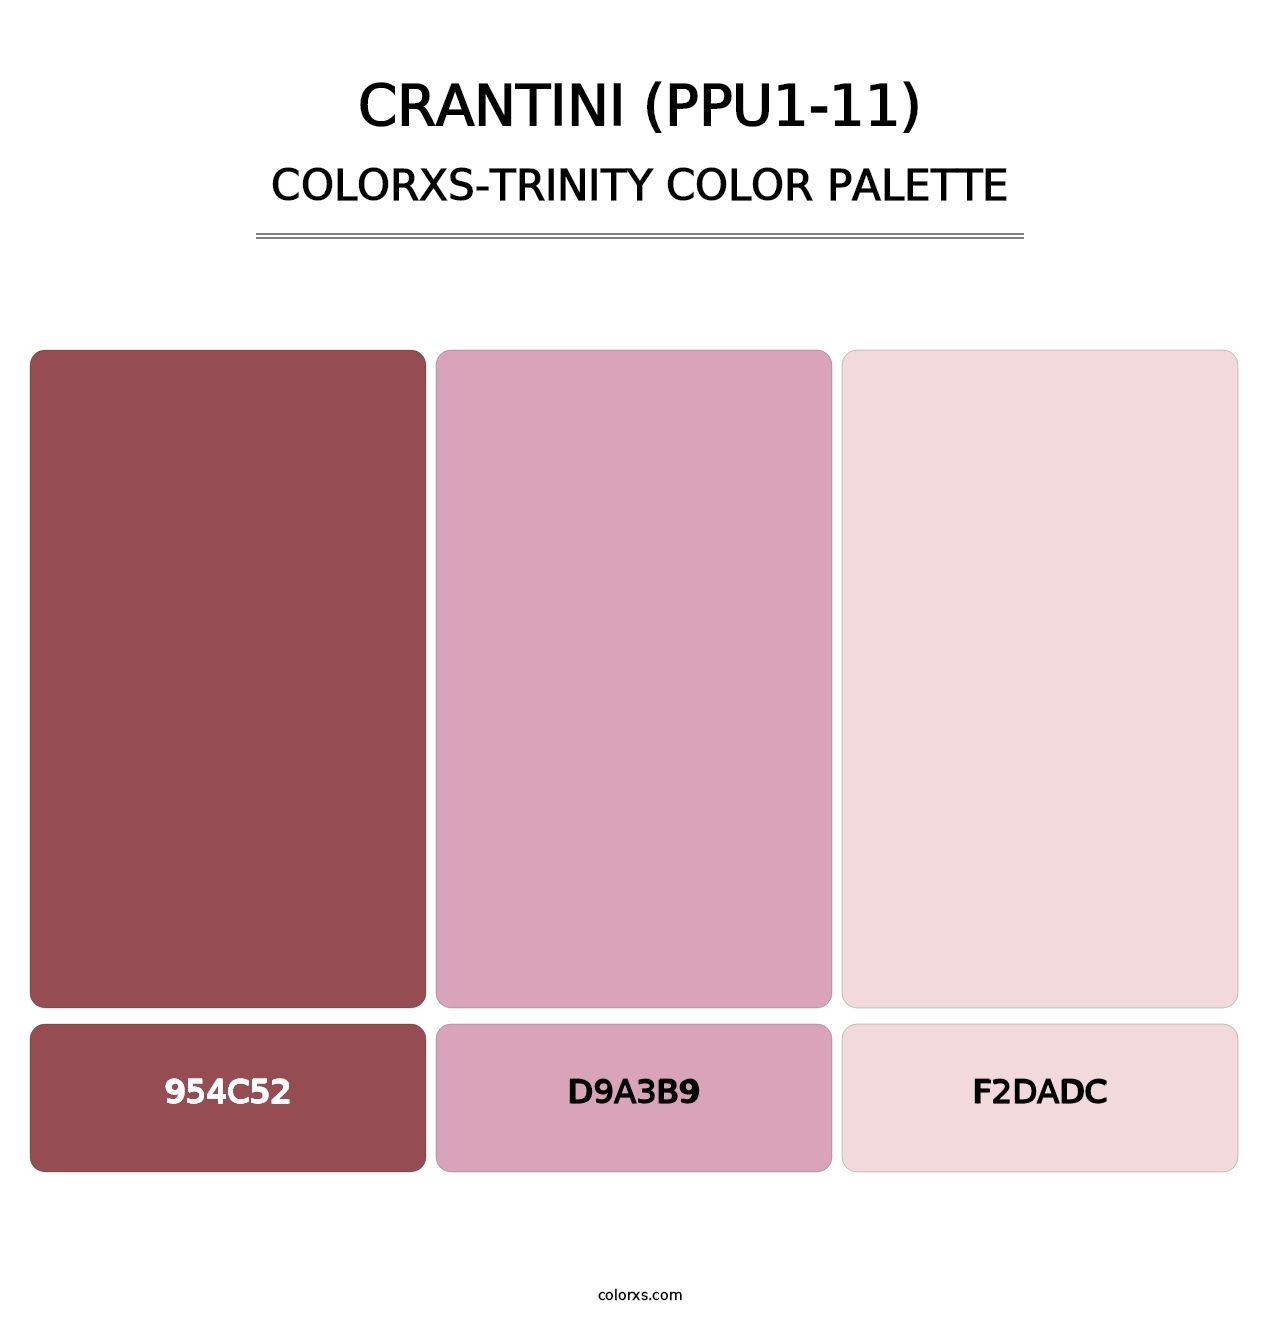 Crantini (PPU1-11) - Colorxs Trinity Palette